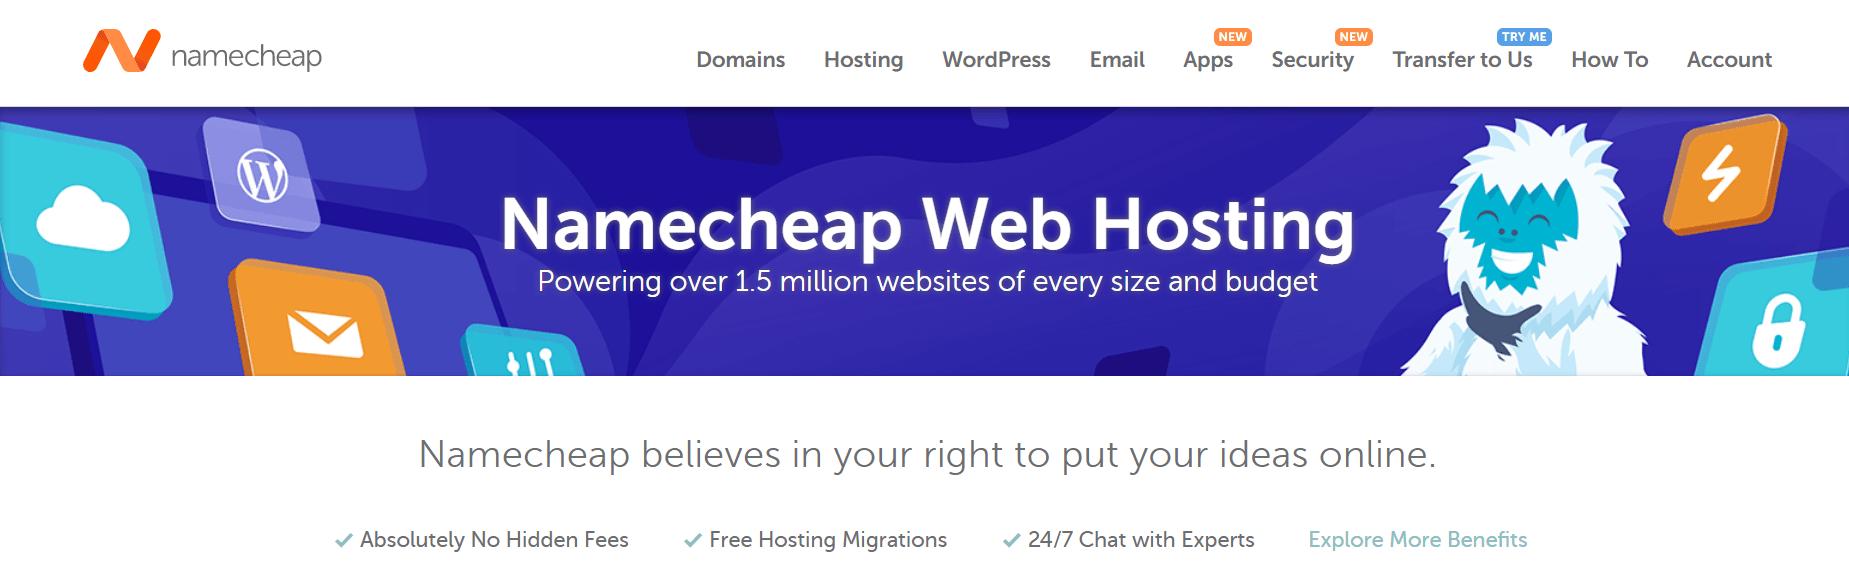 Namecheap虛擬主機頁面。